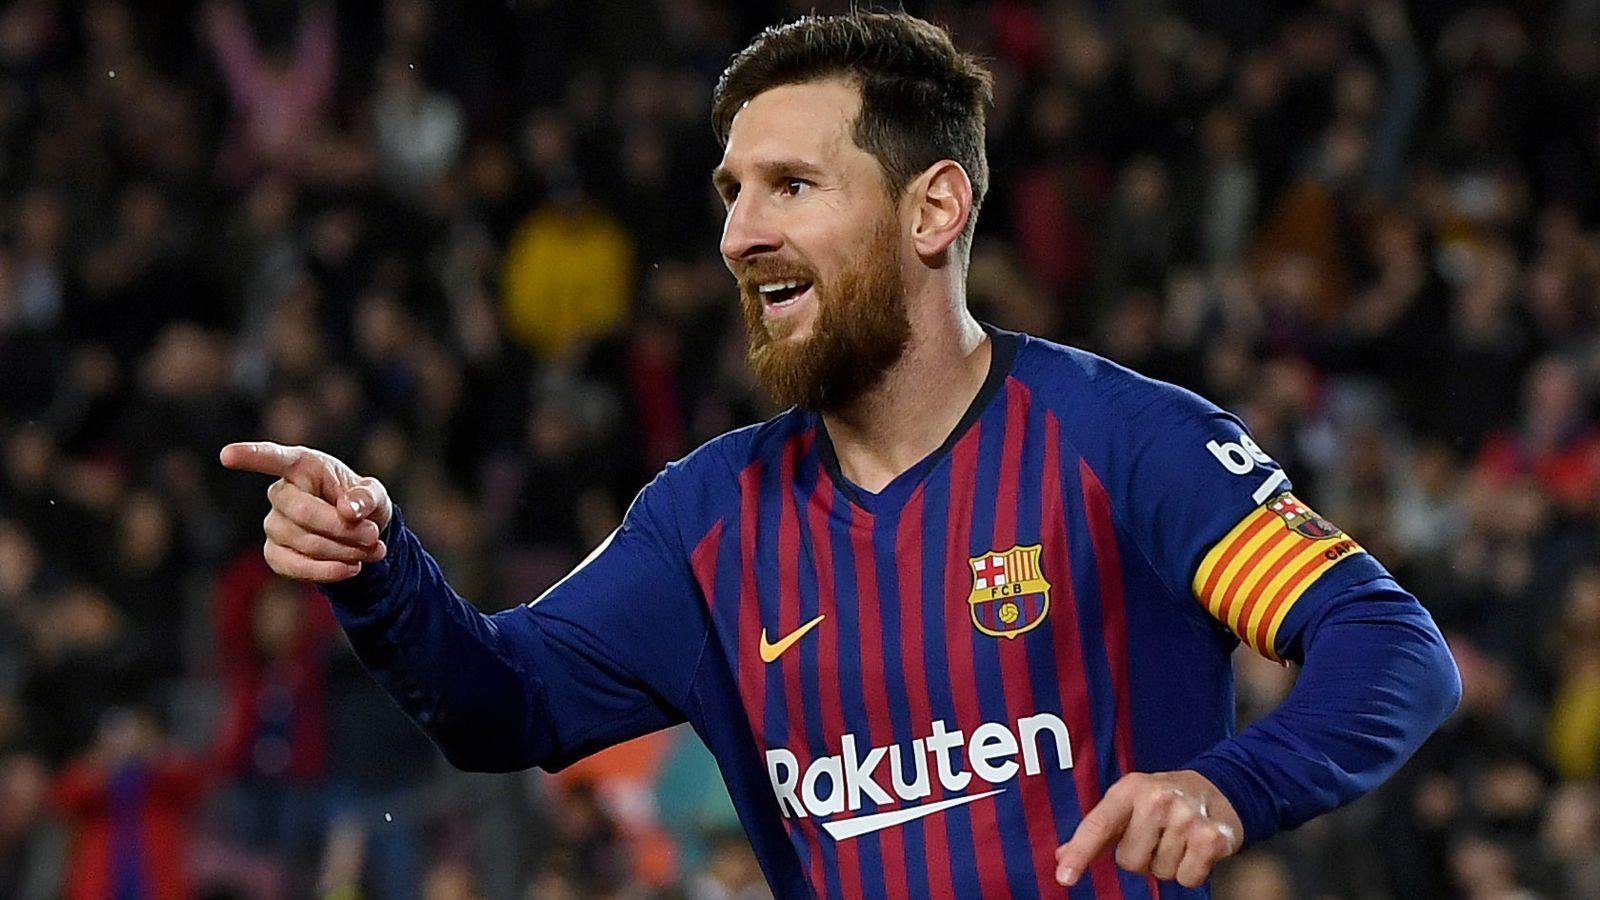 
                <strong>Platz 1 - Lionel Messi</strong><br>
                Tore von außerhalb des Strafraumes seit 2013: 45Verein: FC Barcelona
              